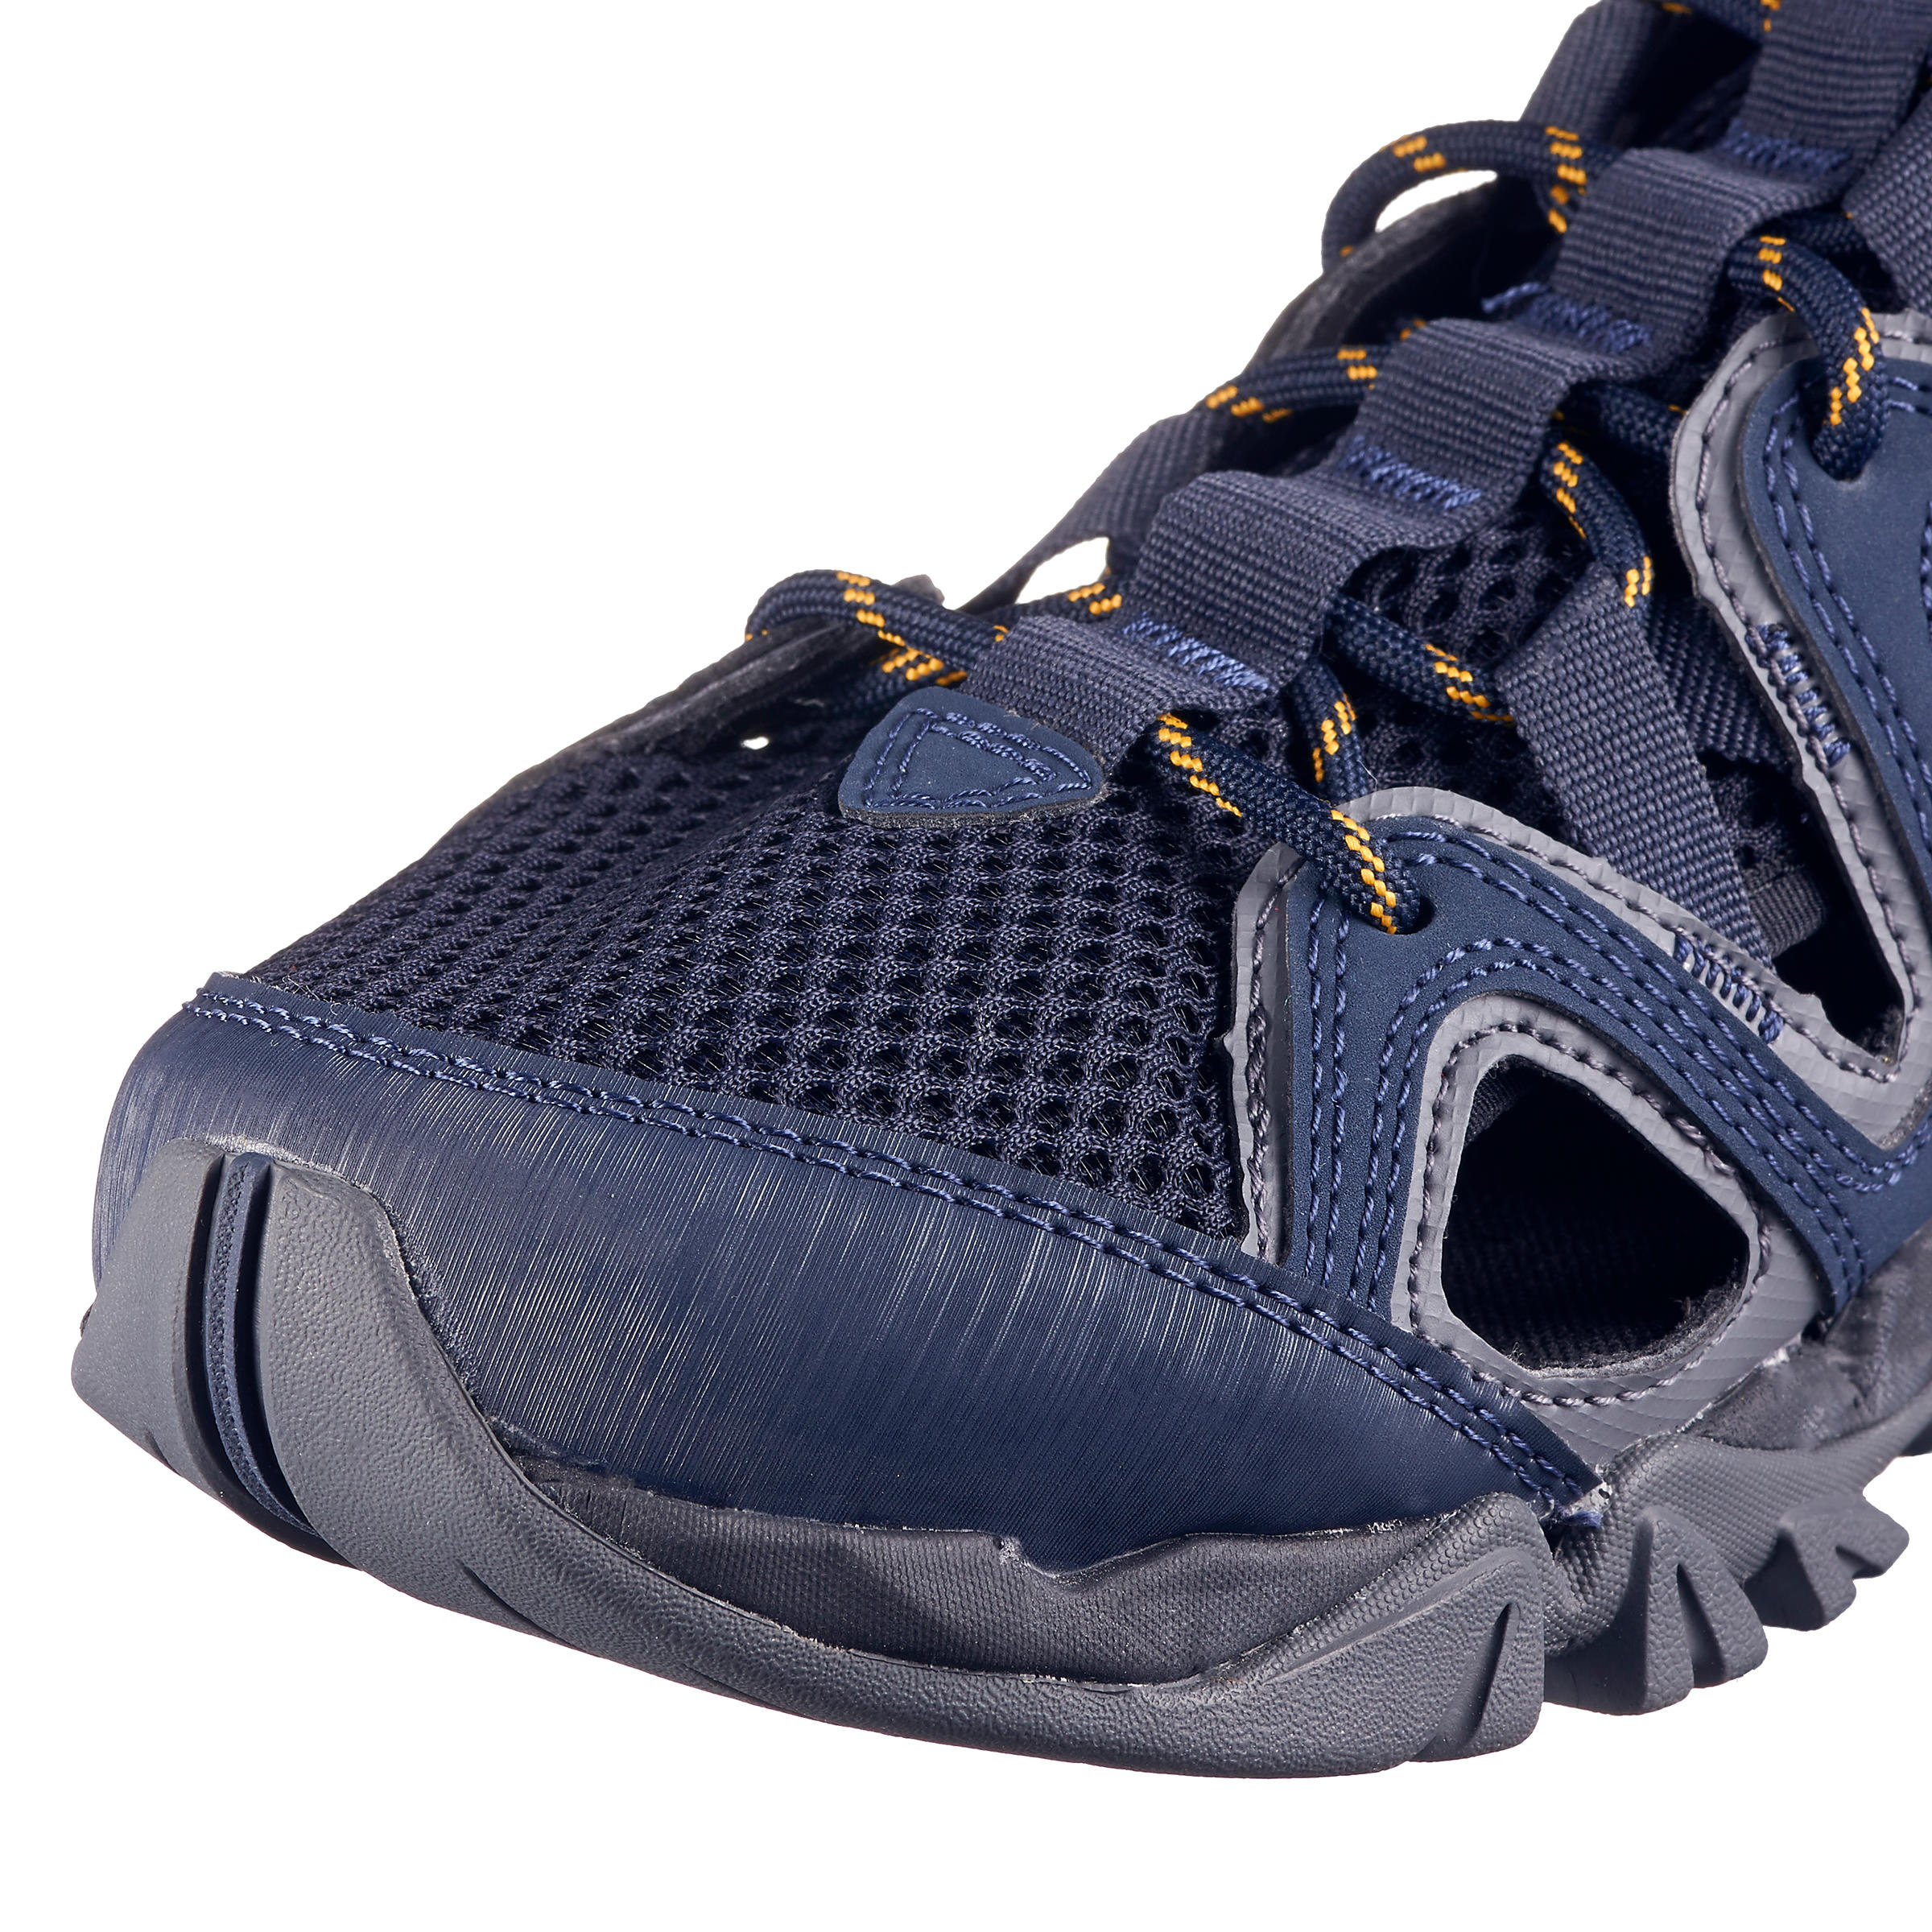 Men's walking sandals - Merrell Tetrex Crest - Blue 2/5